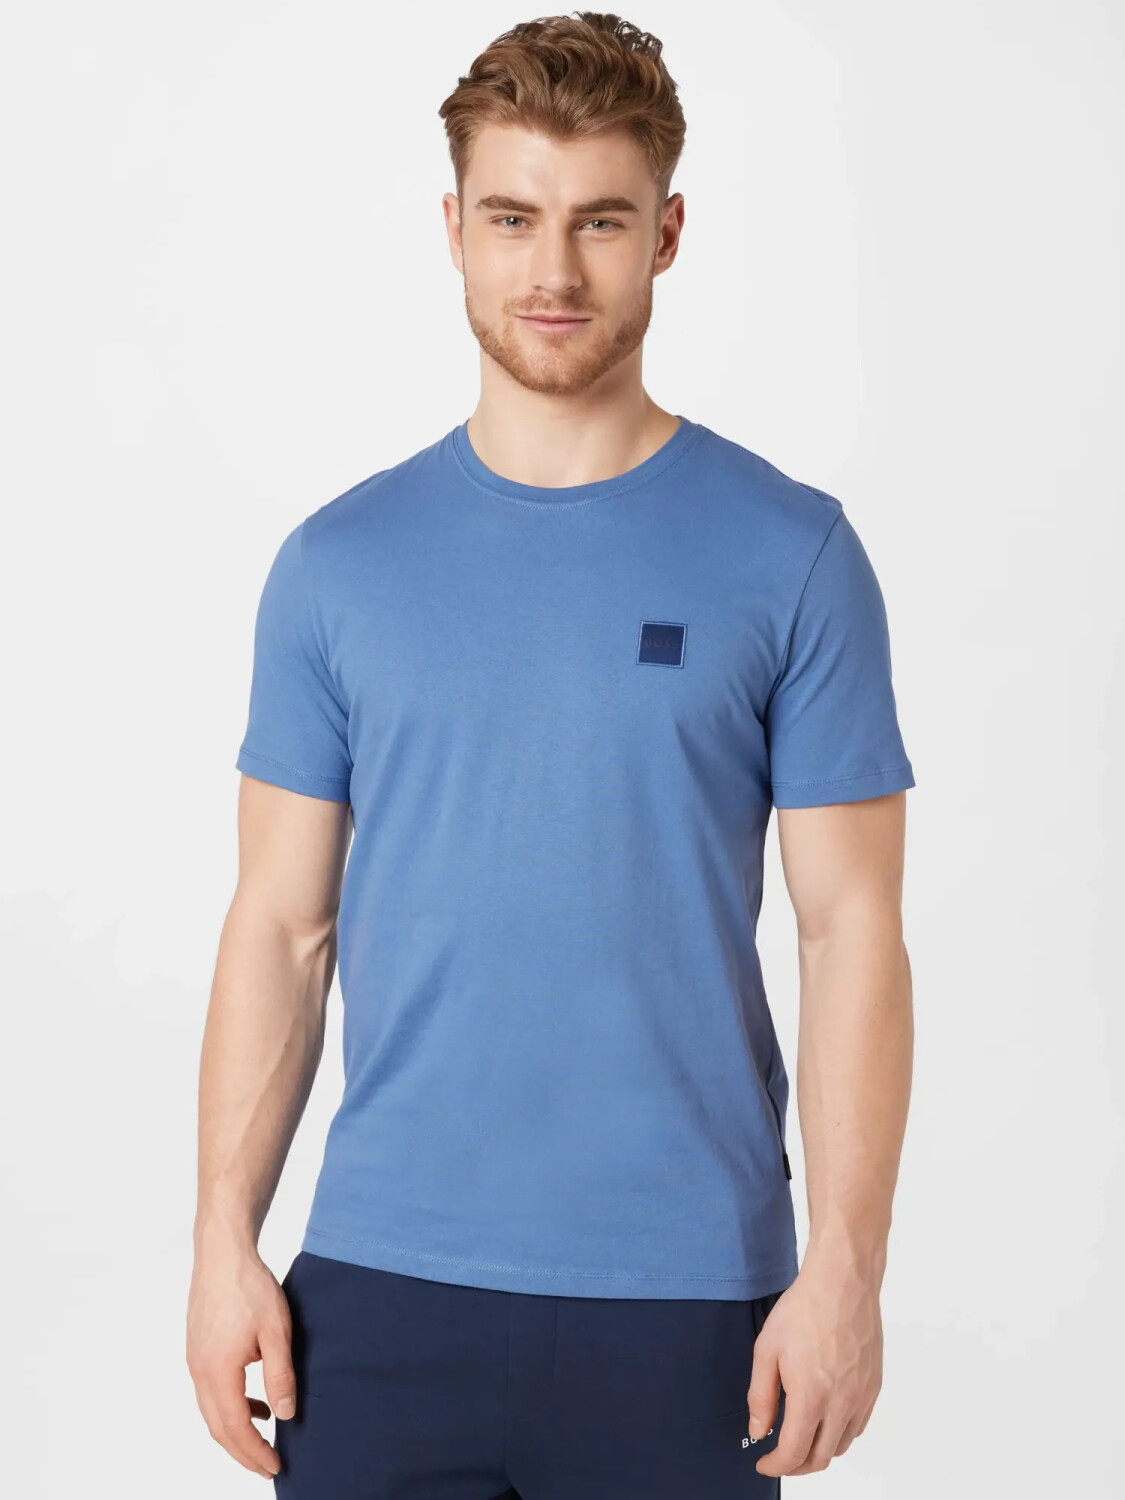 Hugo Boss Tales T-Shirt (50472584) open blue ab 34,99 € | Preisvergleich  bei